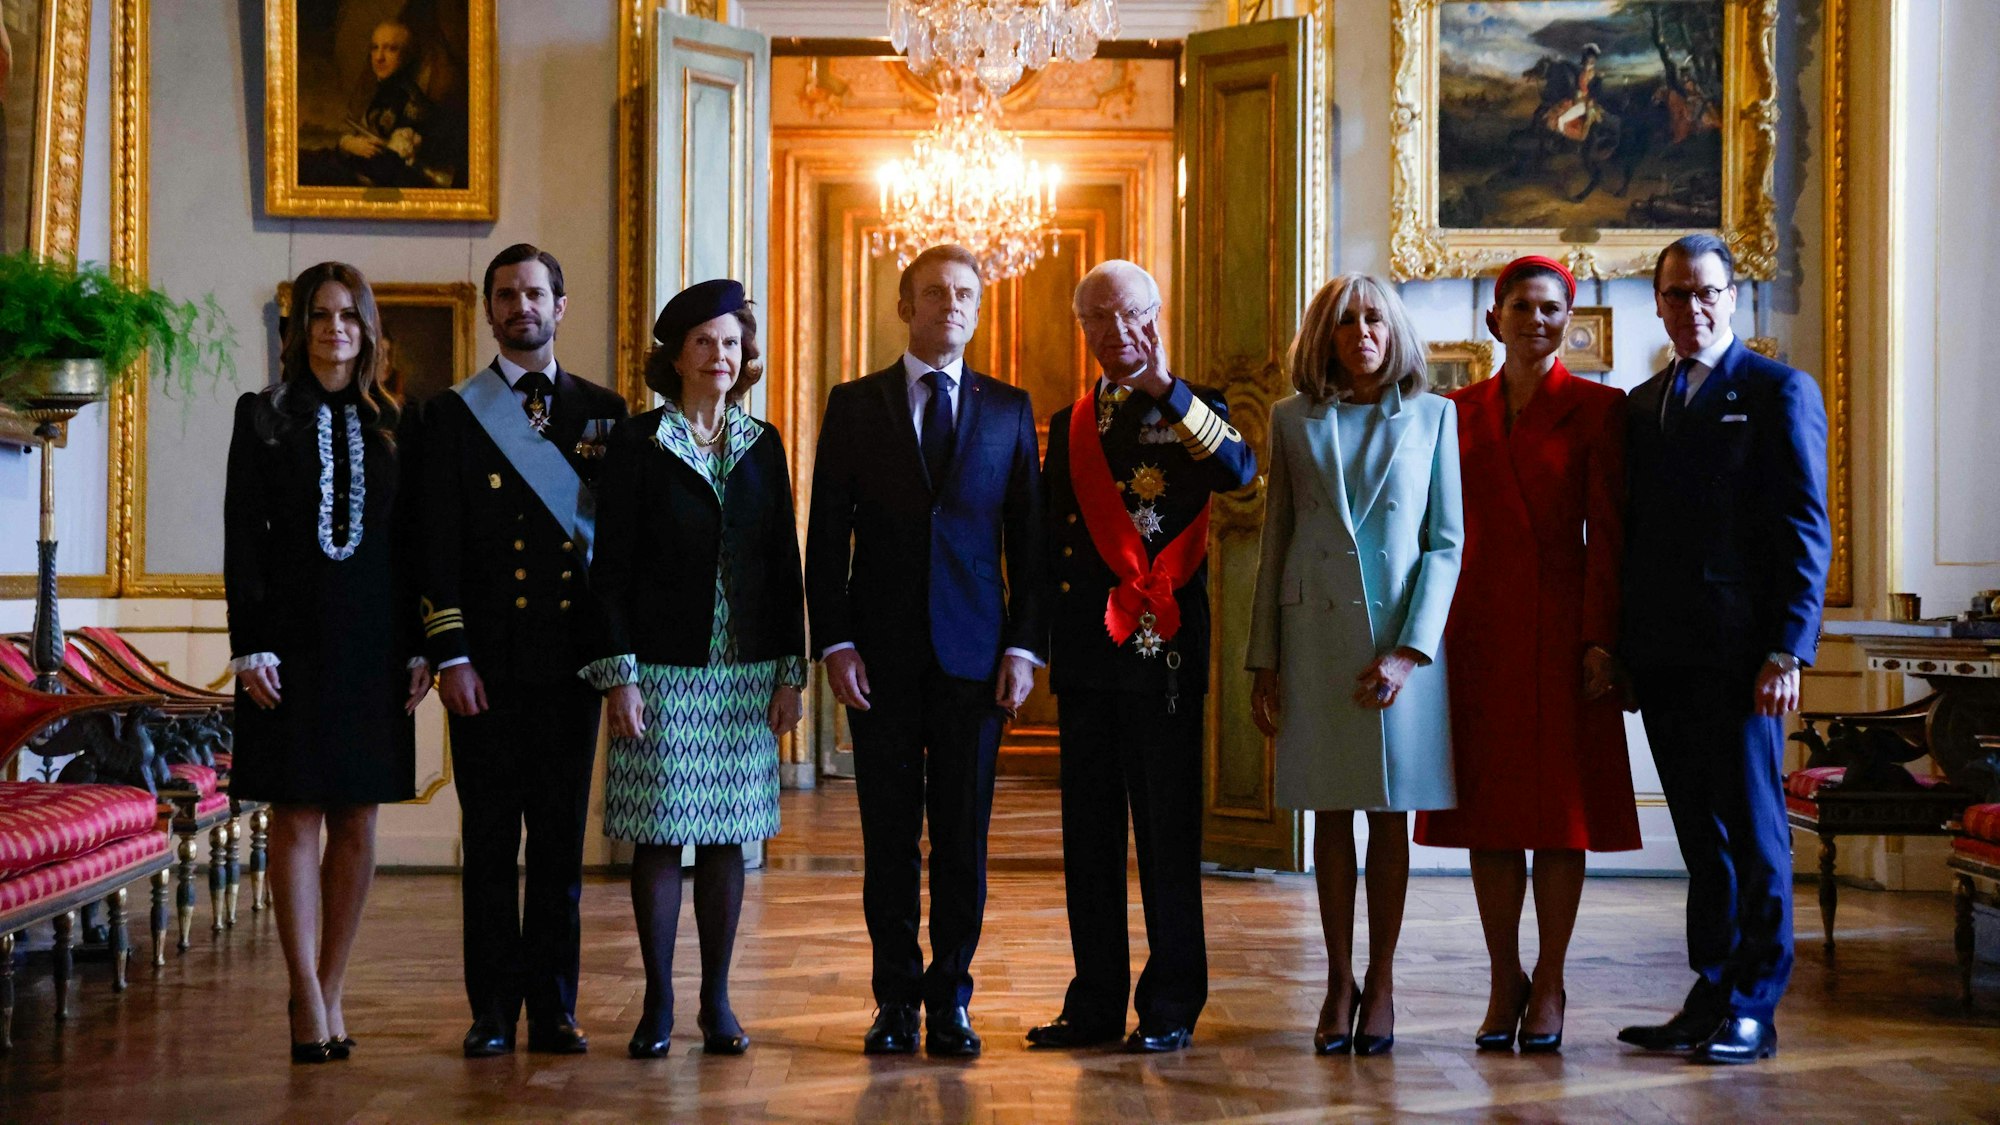 König Carl XVI. Gustaf von Schweden (4.v.r.), Königin Silvia von Schweden (2.v.l.), der französische Präsident Emmanuel Macron (4.v.l.), Brigitte Macron (3.v.r.), Kronprinzessin Victoria von Schweden (2.v.r.), Prinz Carl Philip von Schweden (2.v.l.), Prinzessin Sofia (l.) und Prinz Daniel (r.) posieren für ein Foto während einer offiziellen Begrüßungszeremonie im Königlichen Palast in Stockholm.